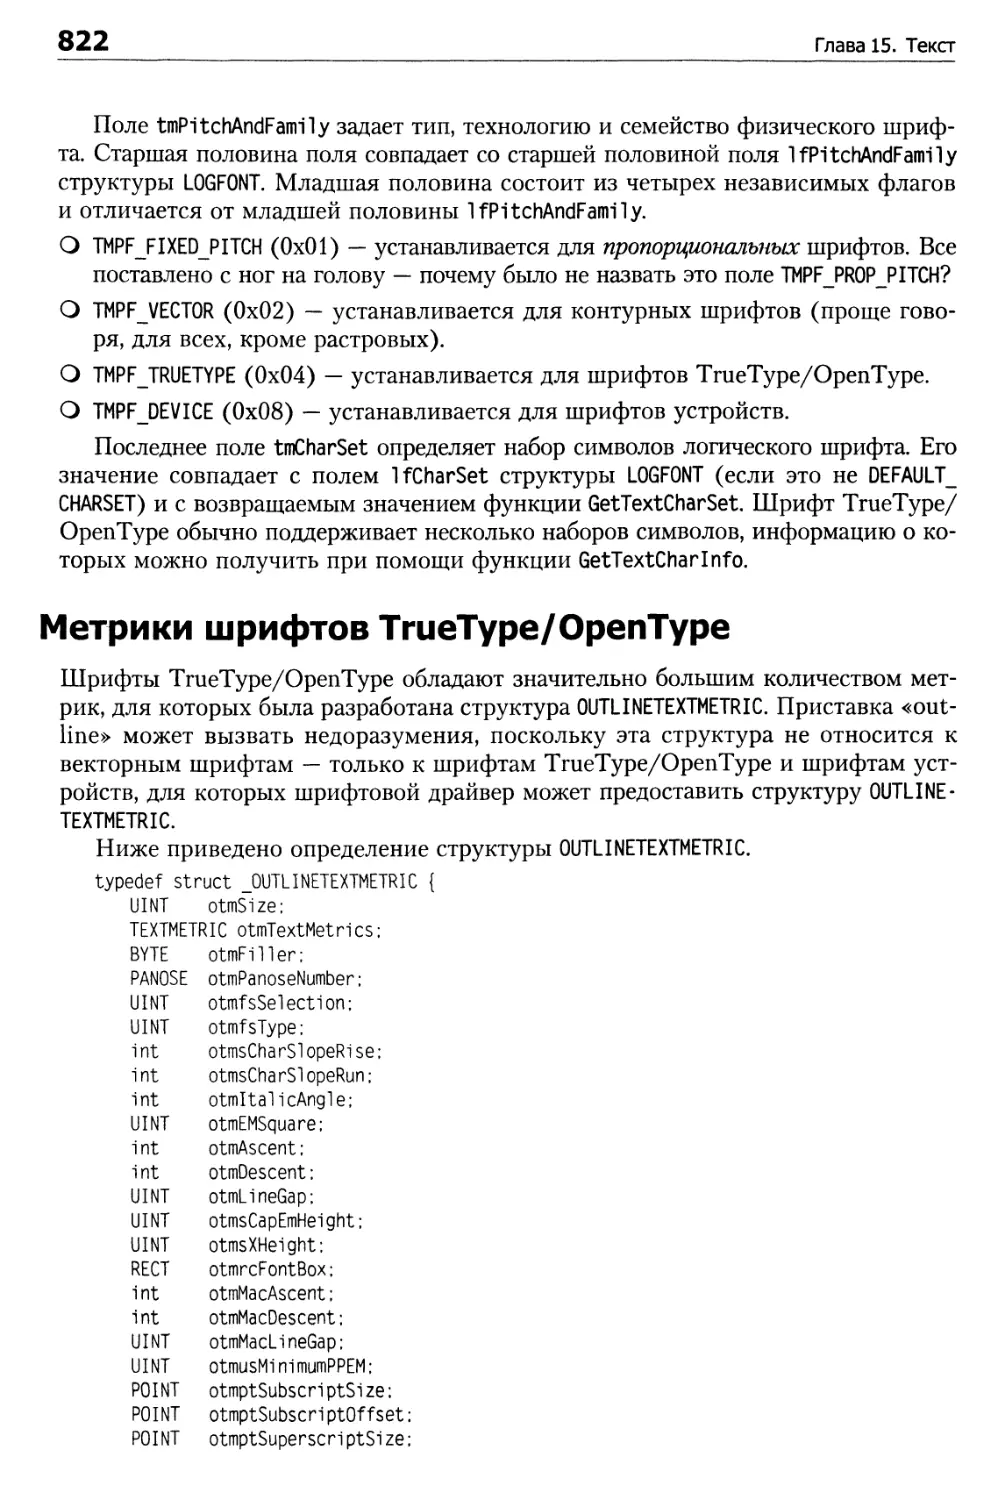 Метрики шрифтов TrueType/OpenType